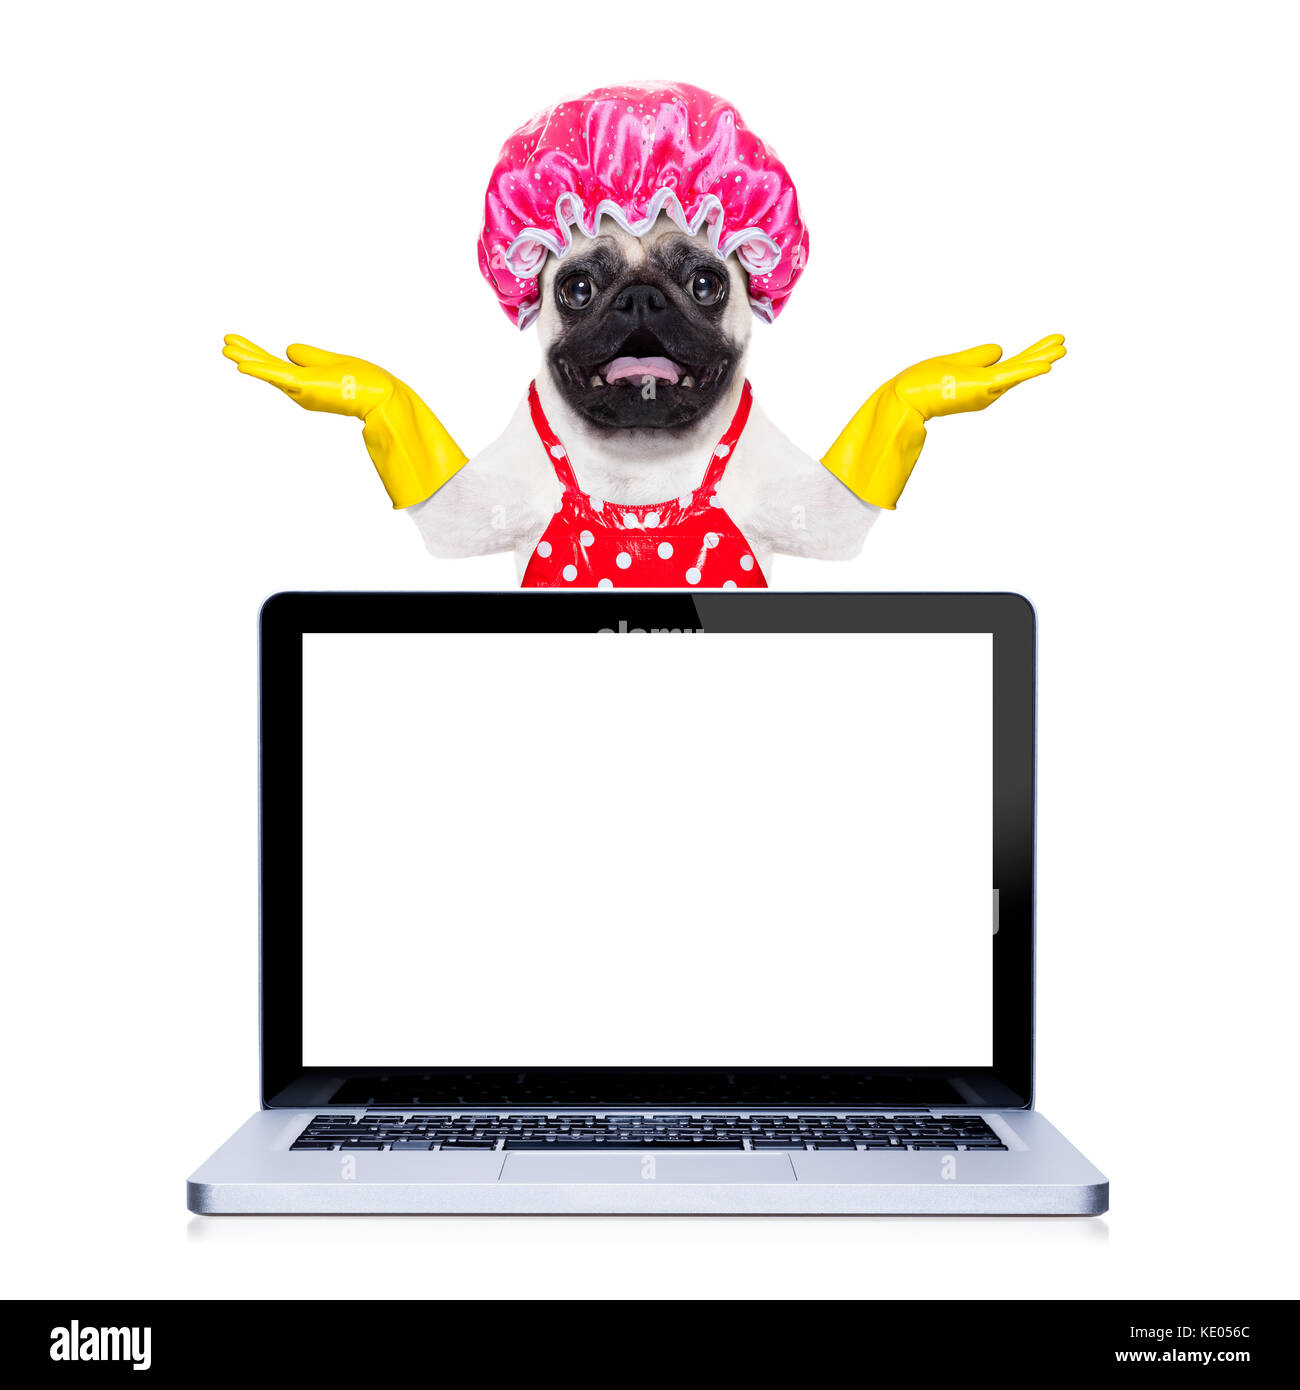 Pug cane fa domestiche con guanti di gomma e cuffia doccia dietro un pc notebook con schermo di computer , isolato su sfondo bianco Foto Stock